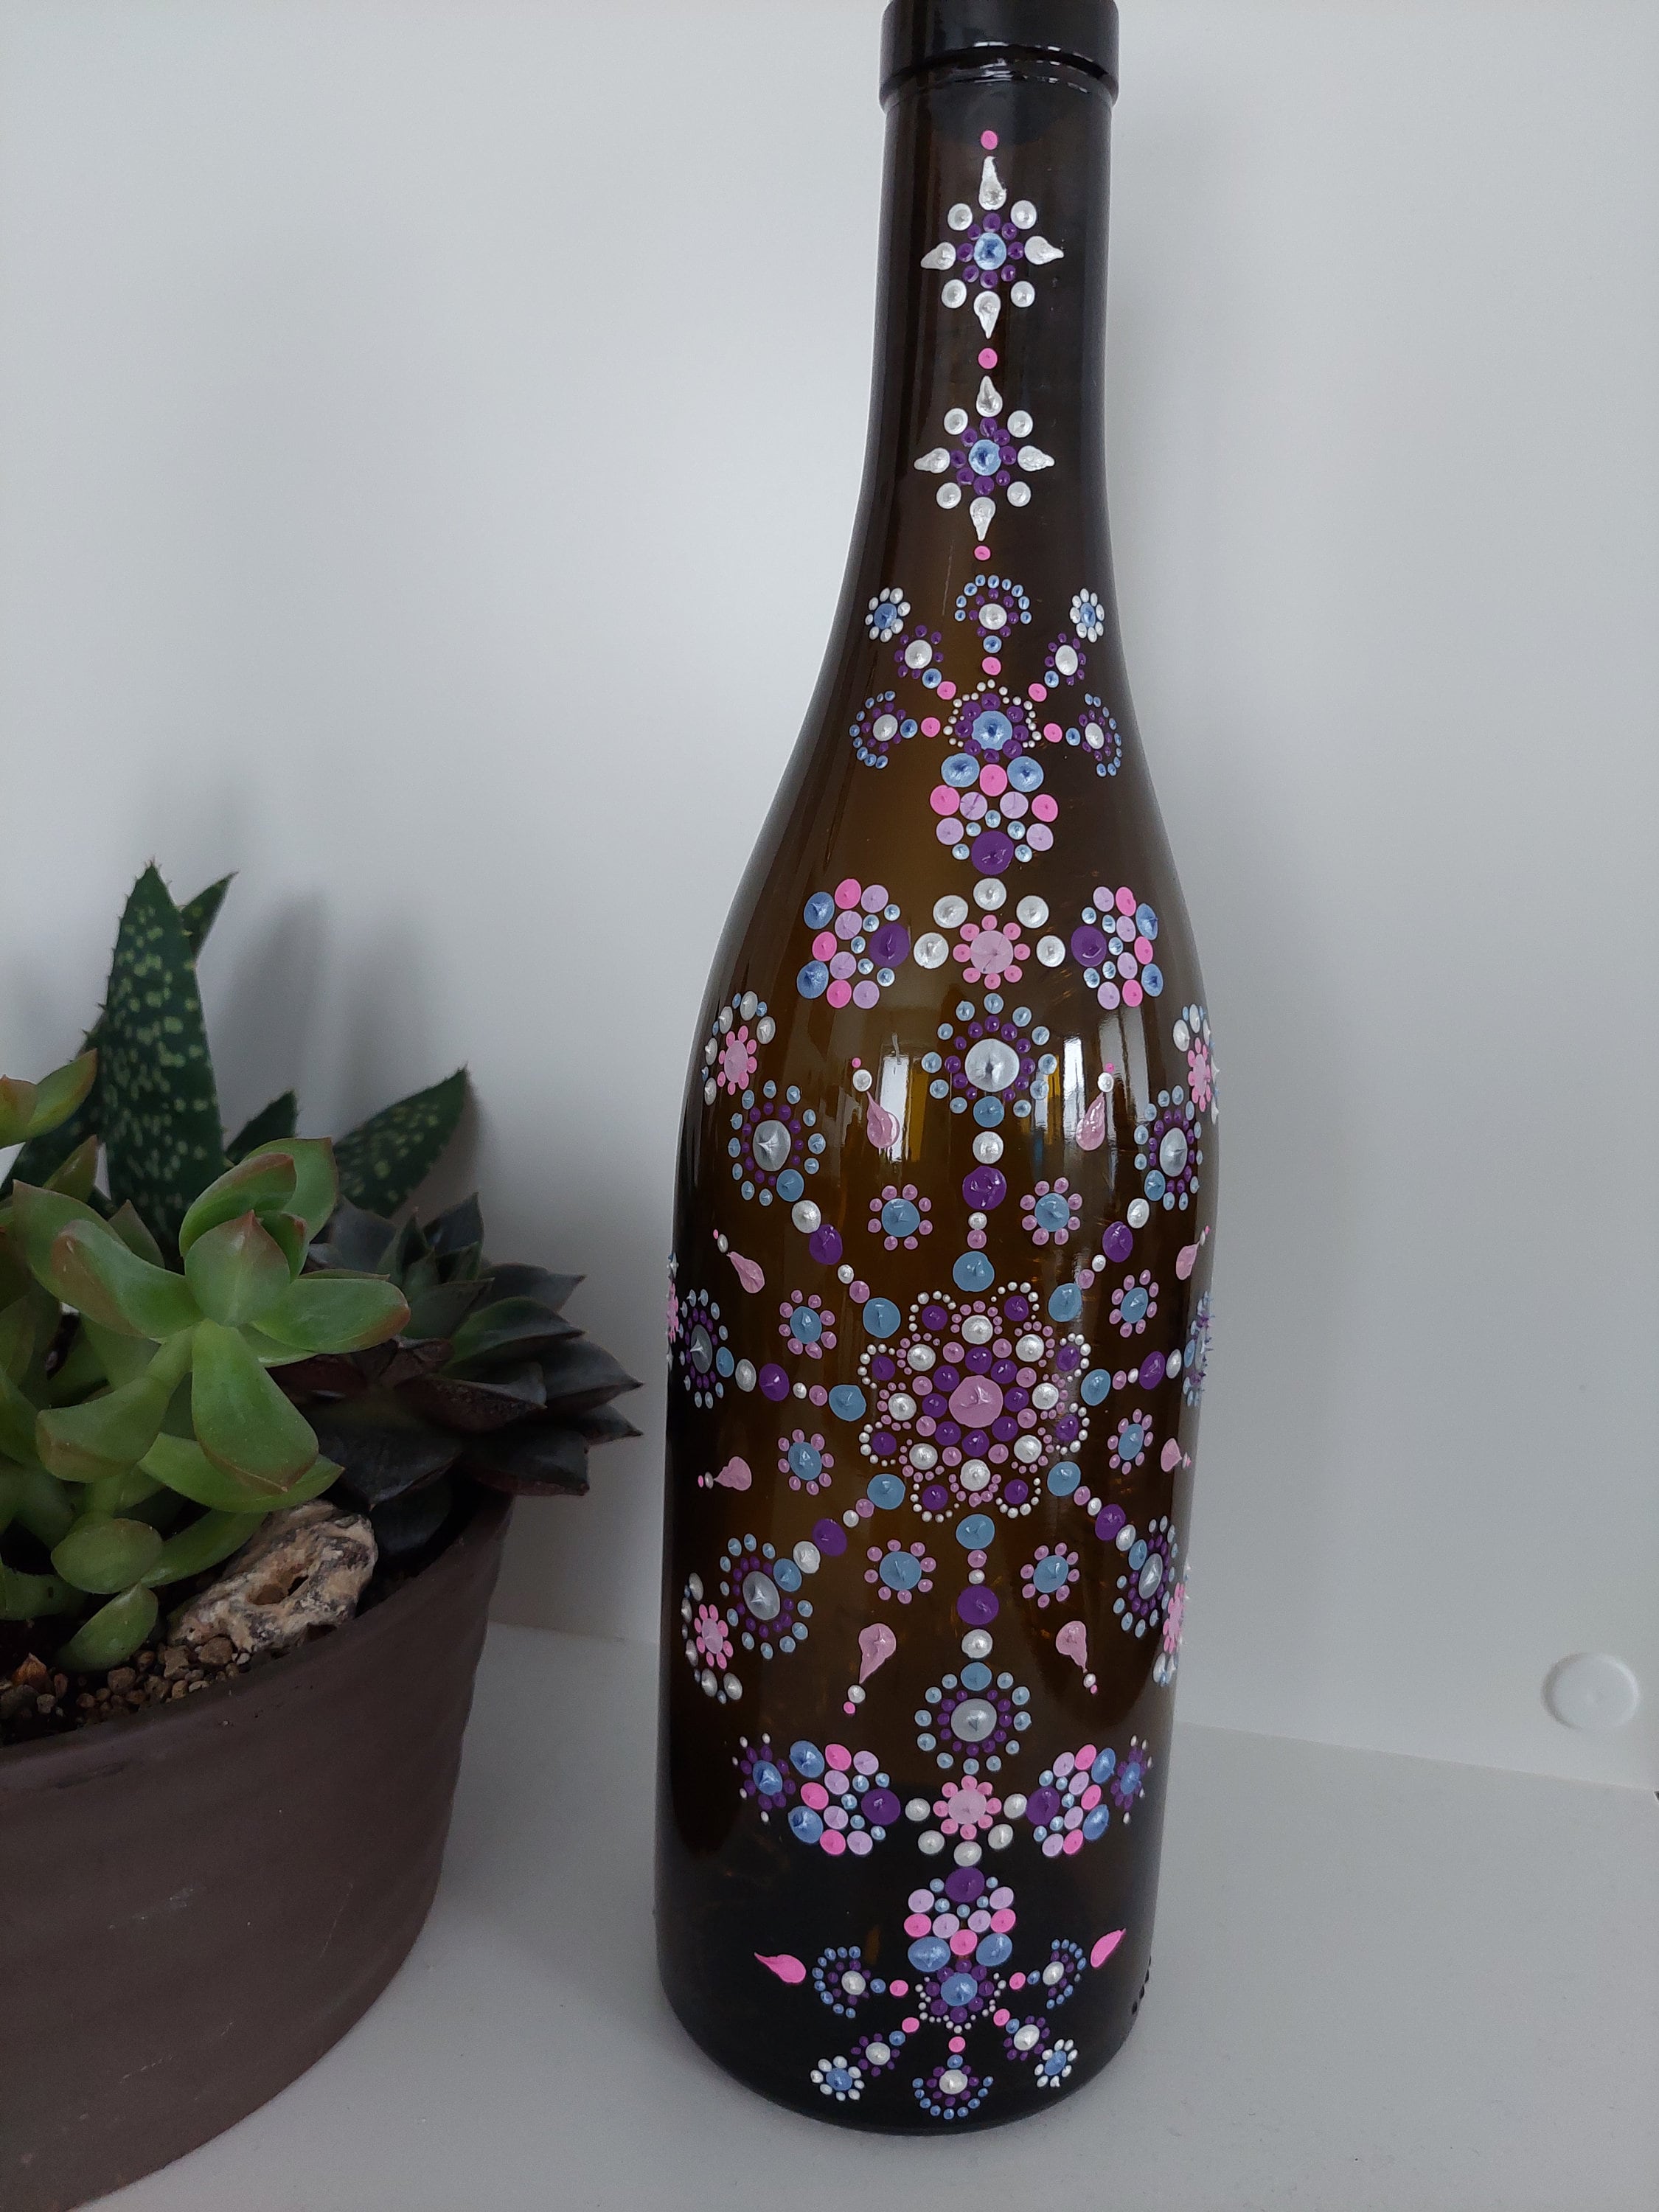 Sagres Bierflasche mit Lichterkette als Deko Lichtflasche. Deko Licht Lampe